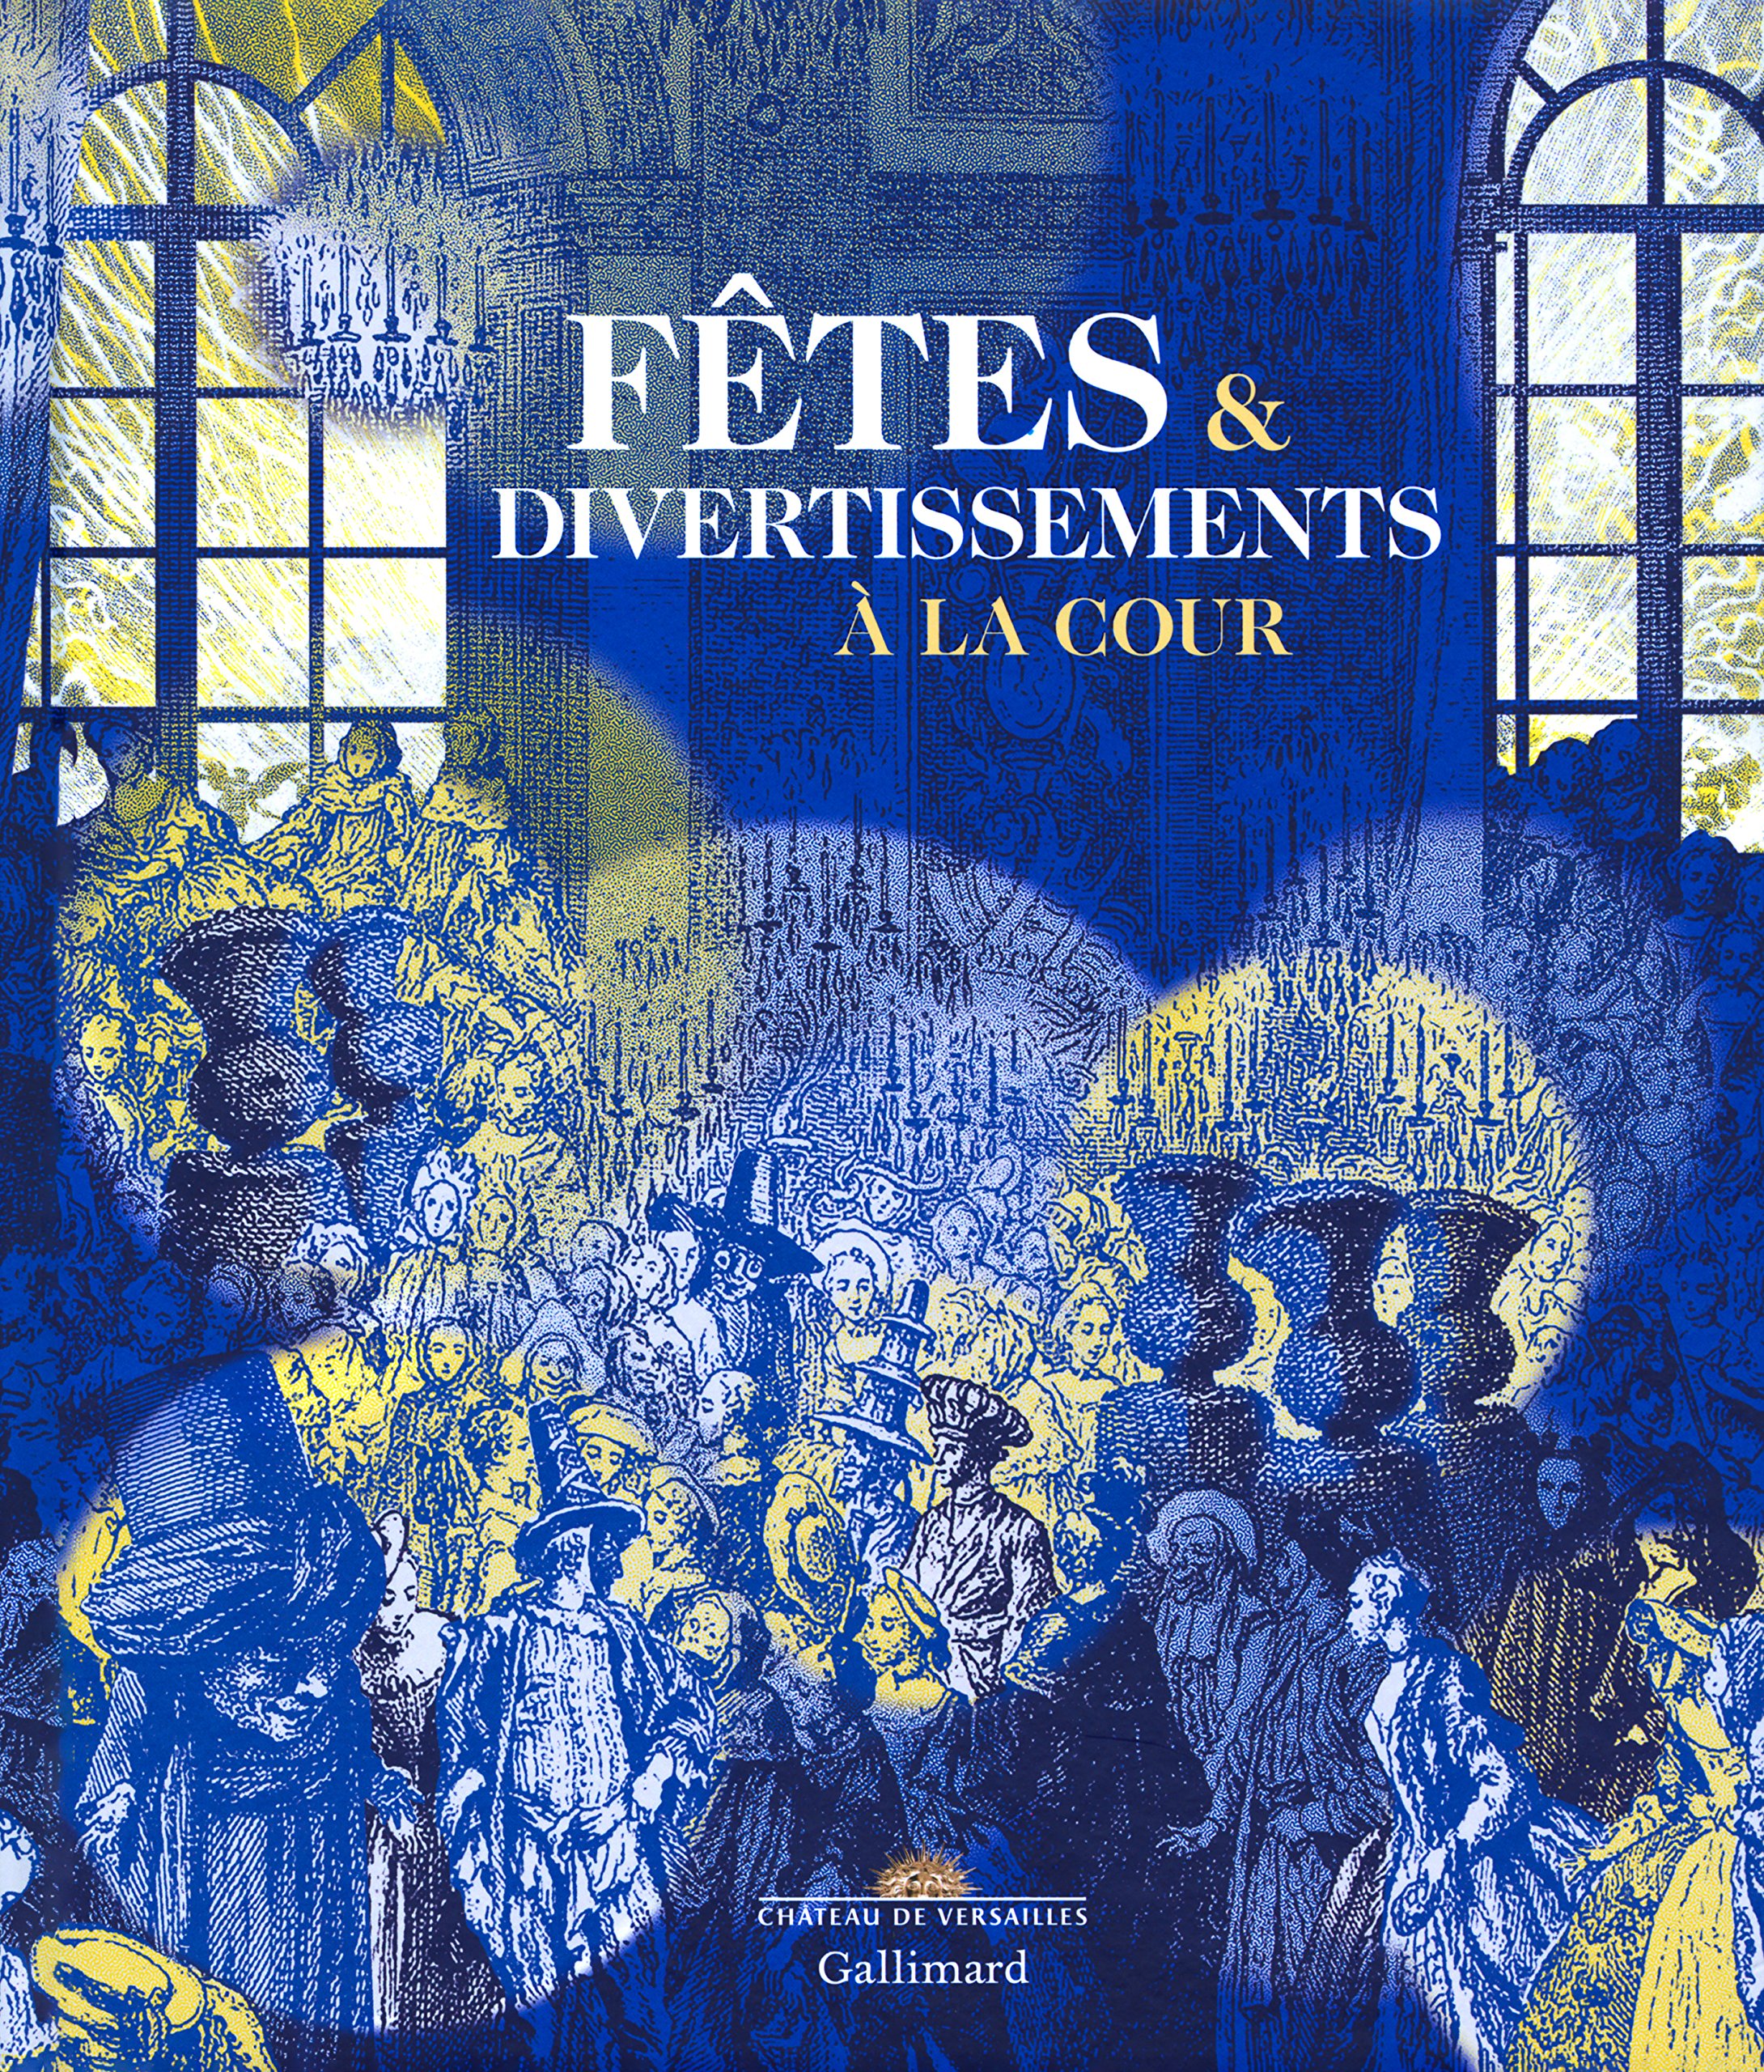 Fêtes & divertissements à la cour, (cat. expo. Château de Versailles, nov. 2016-mars 2017), 2016, 392 p., 400 ill.